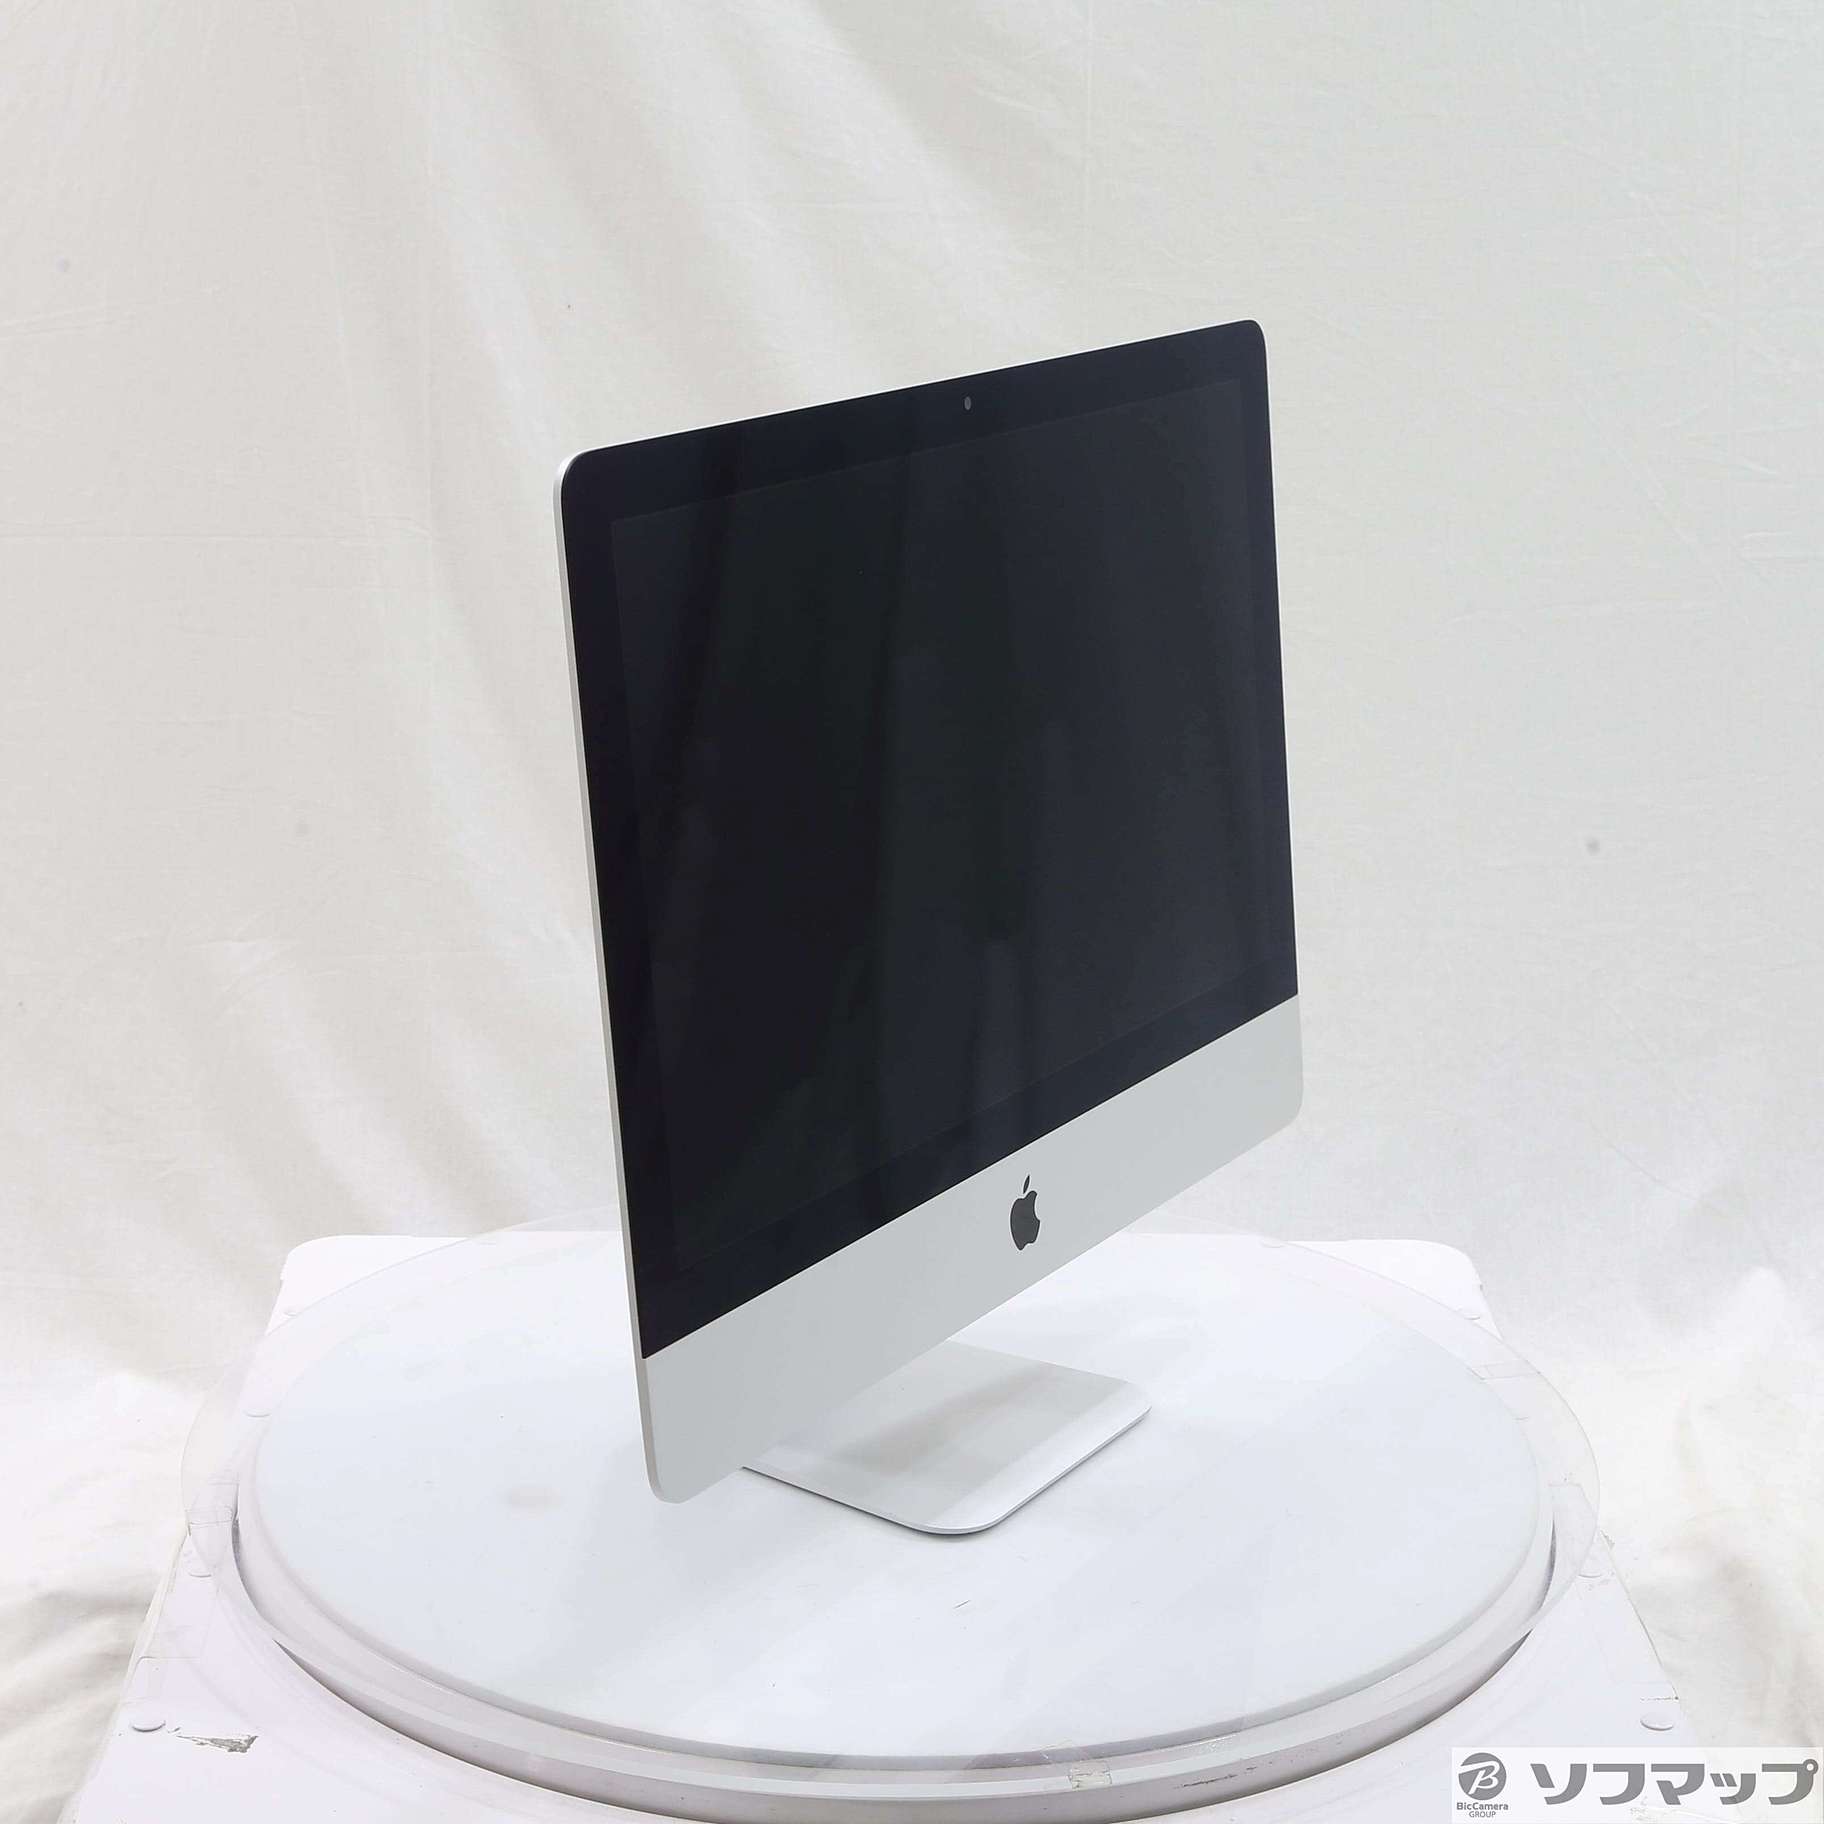 中古】セール対象品 iMac 21.5-inch Mid 2017 MMQA2J／A Core_i5 2.3